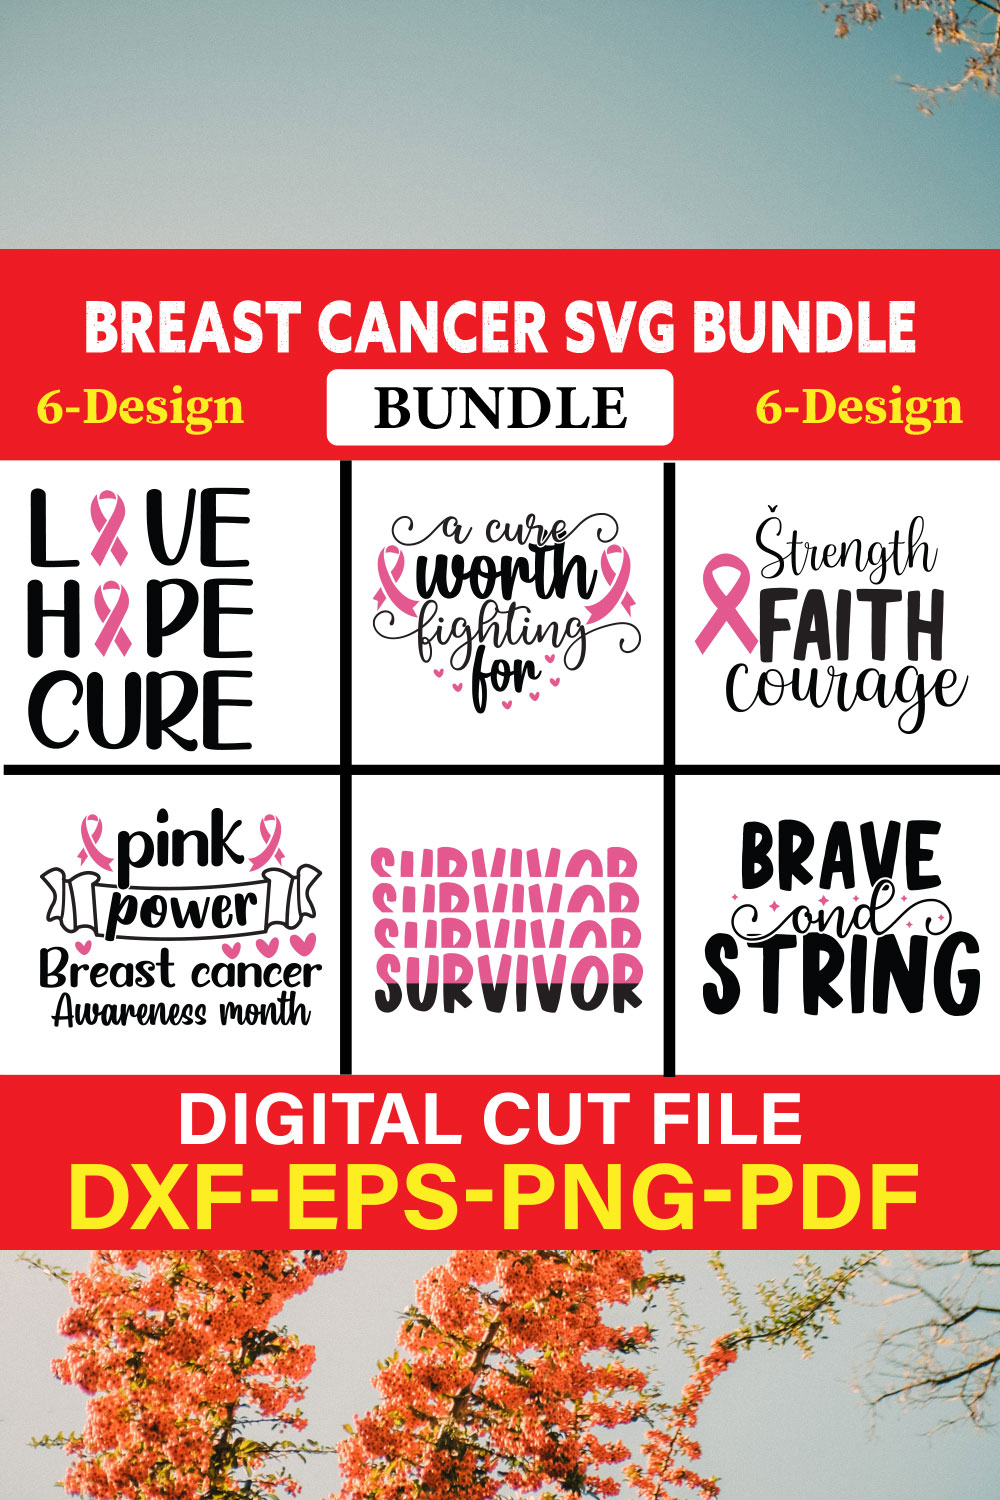 Breast Cancer SVG Bundle, Cancer SVG, Cancer Awareness, Vol-01 pinterest preview image.